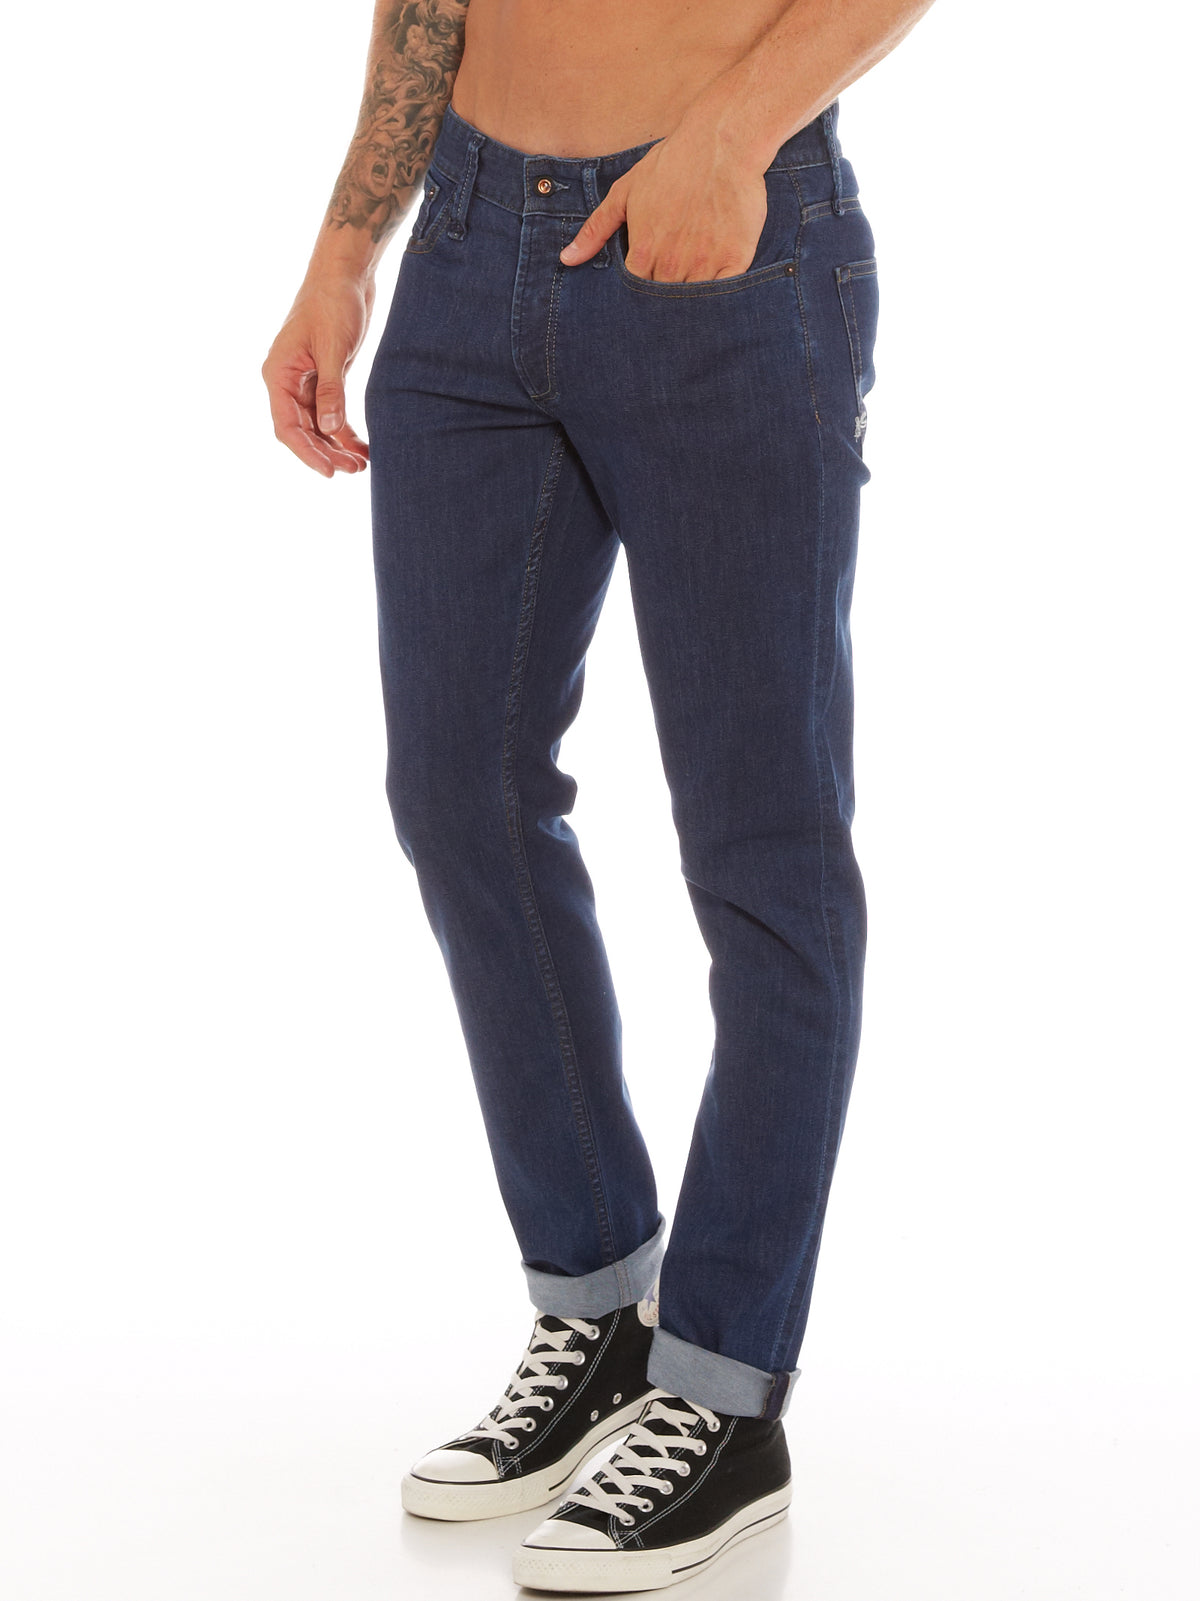 Razor Slim Straight Jeans in ICF Blue Denim